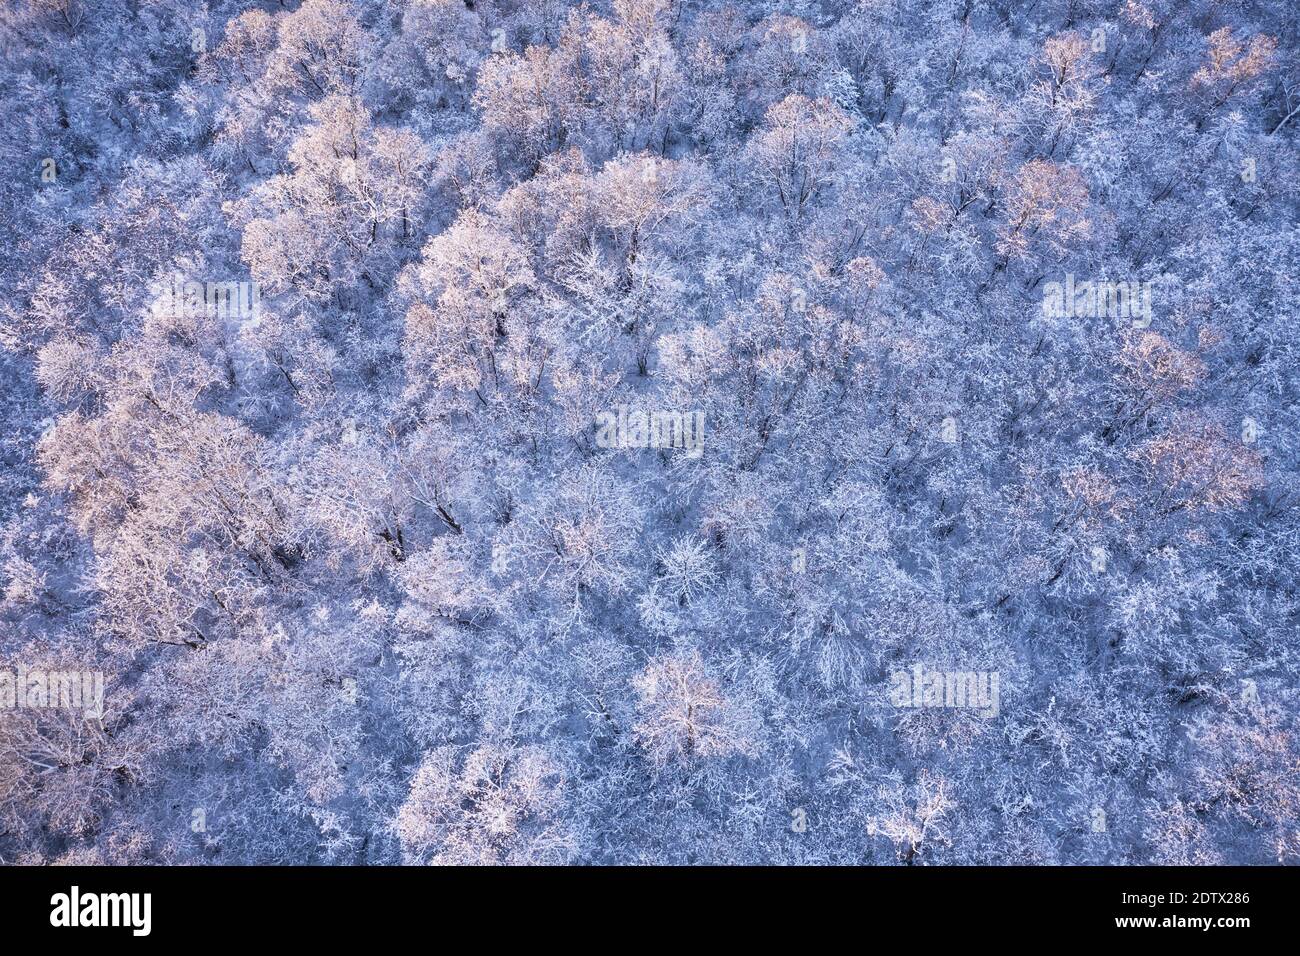 La cima del drone aereo vola sopra la foresta invernale congelata. Alberi ricoperti di neve e gelo. Fotografia di paesaggio Foto Stock